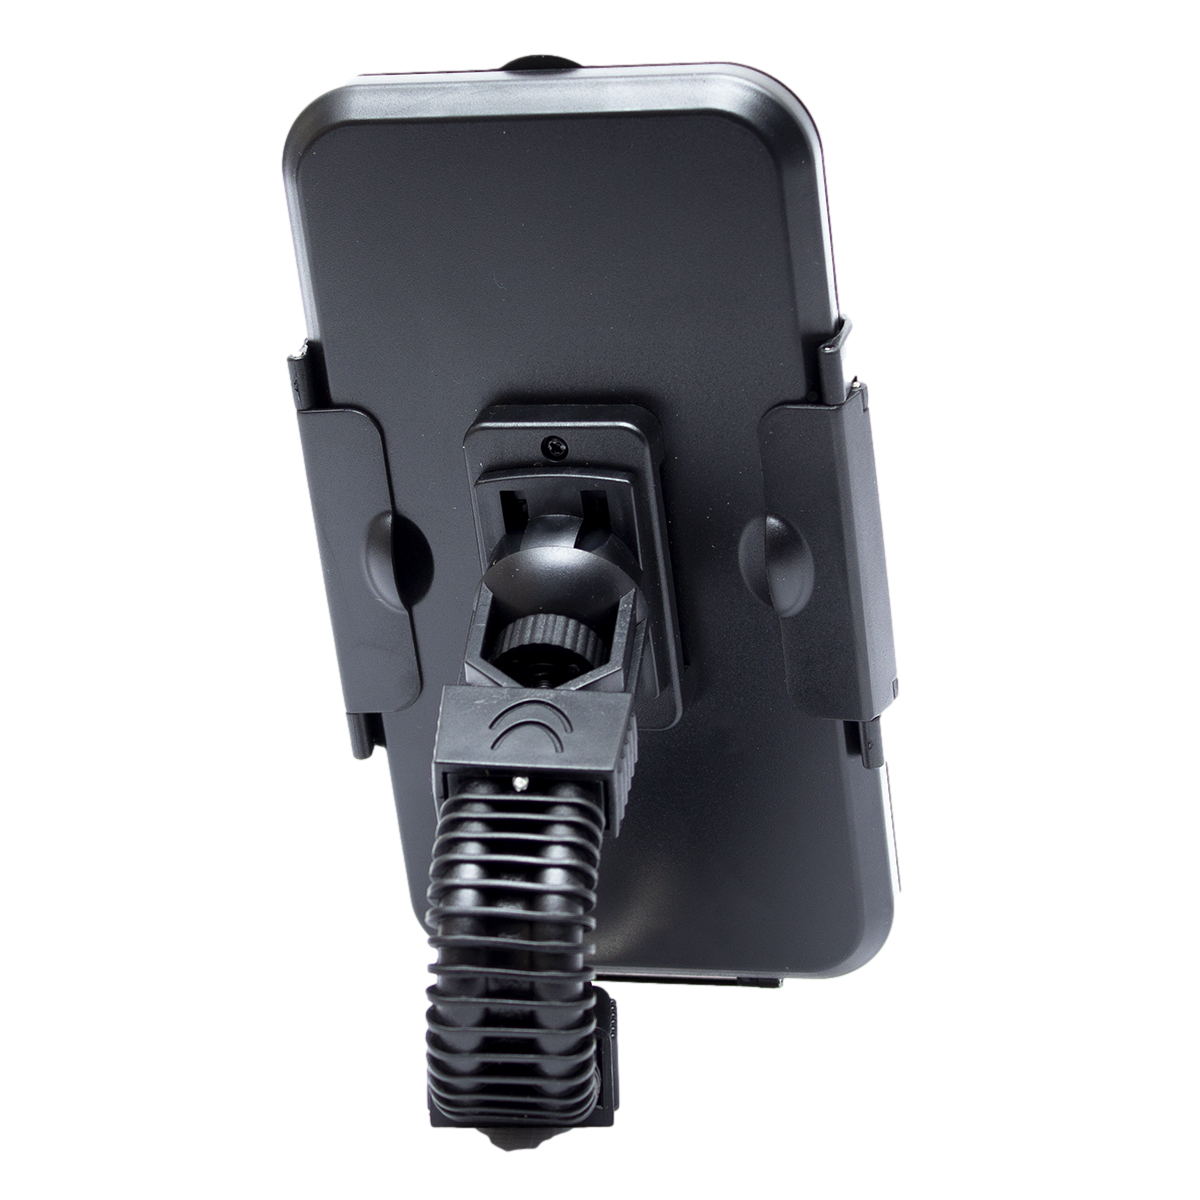 Soporte para celular con carga Inalámbrica GAR157 - Pixal Center